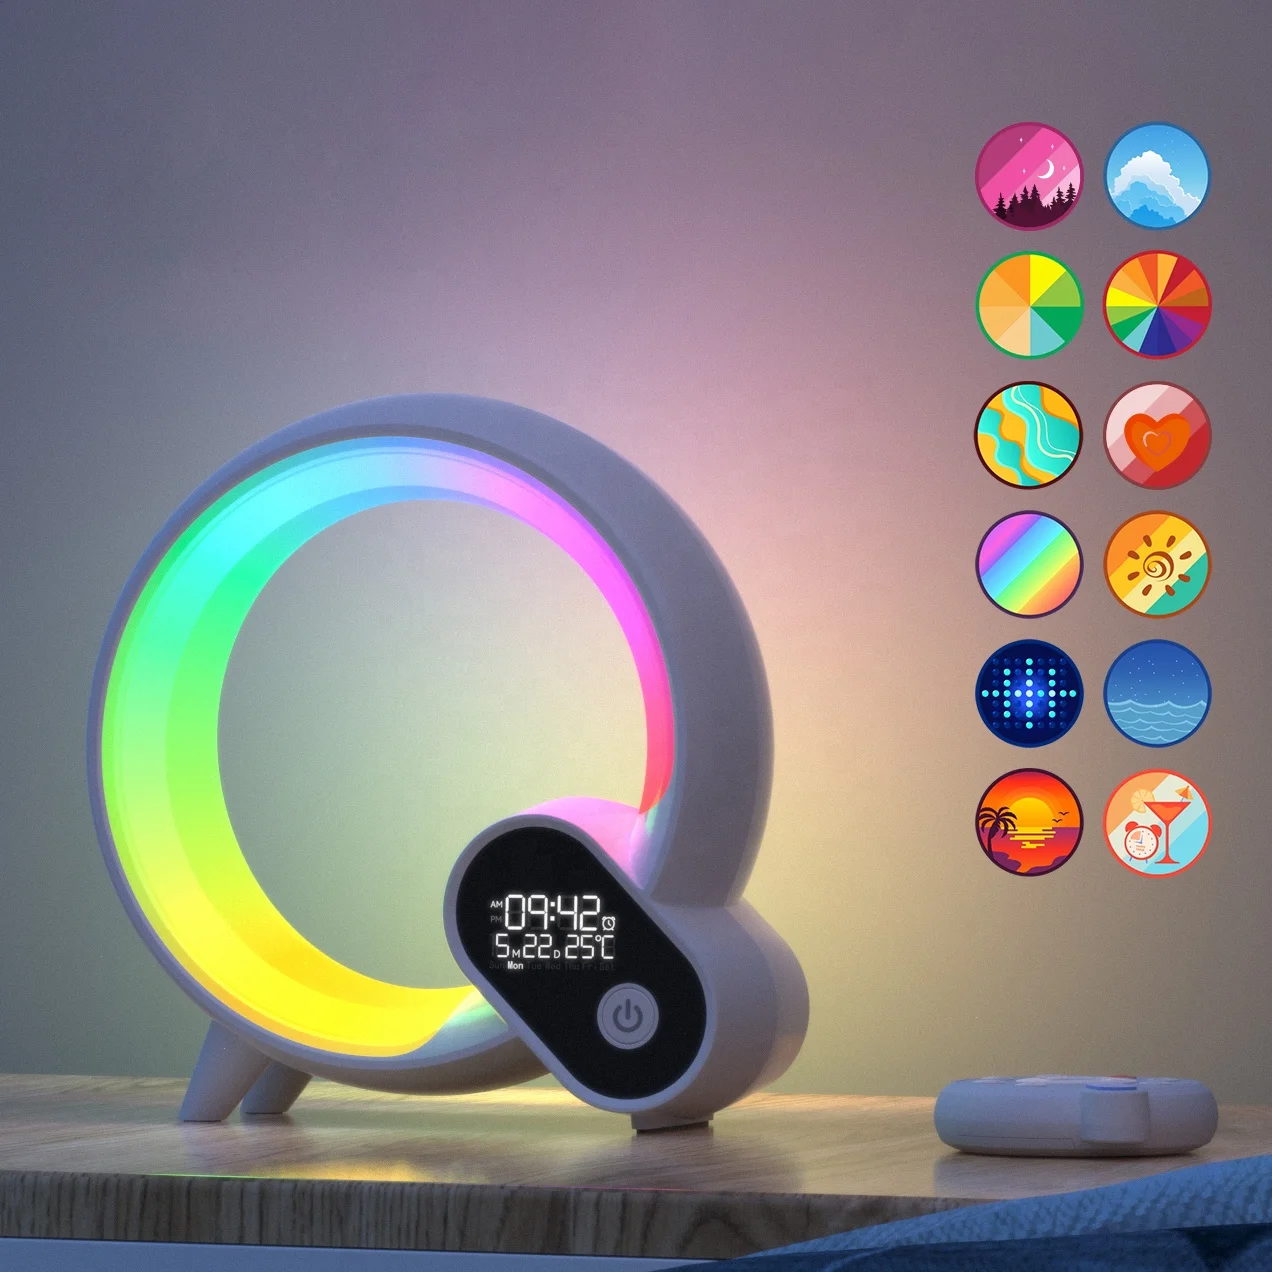 

Q colorful atmosphere light sunrise digital display alarm clock creative intelligent wake up light speaker table